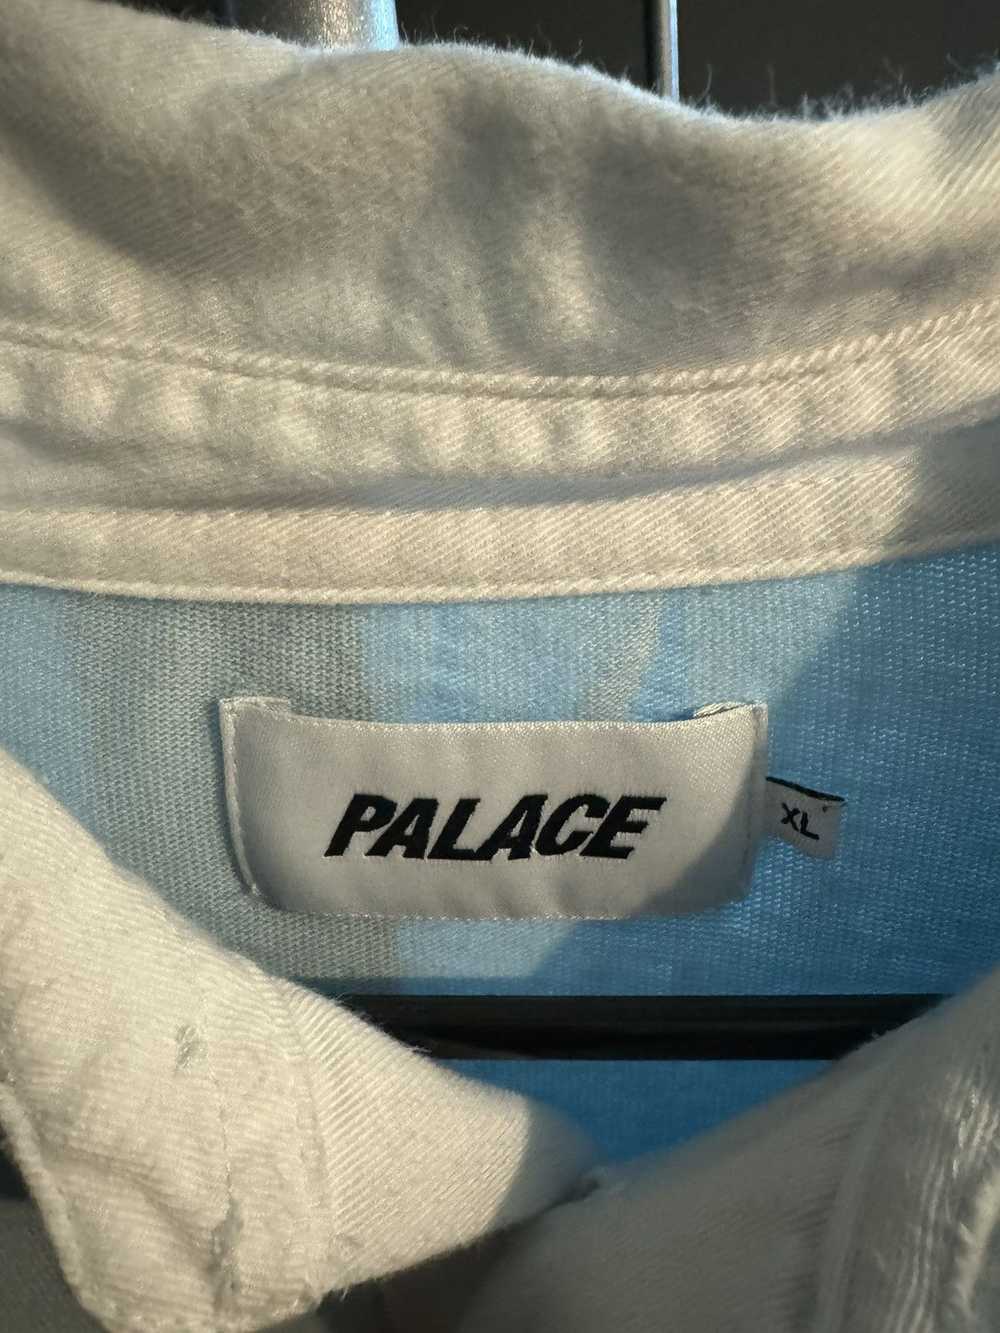 Palace Palace Polo Rugby Long Sleeve - image 3